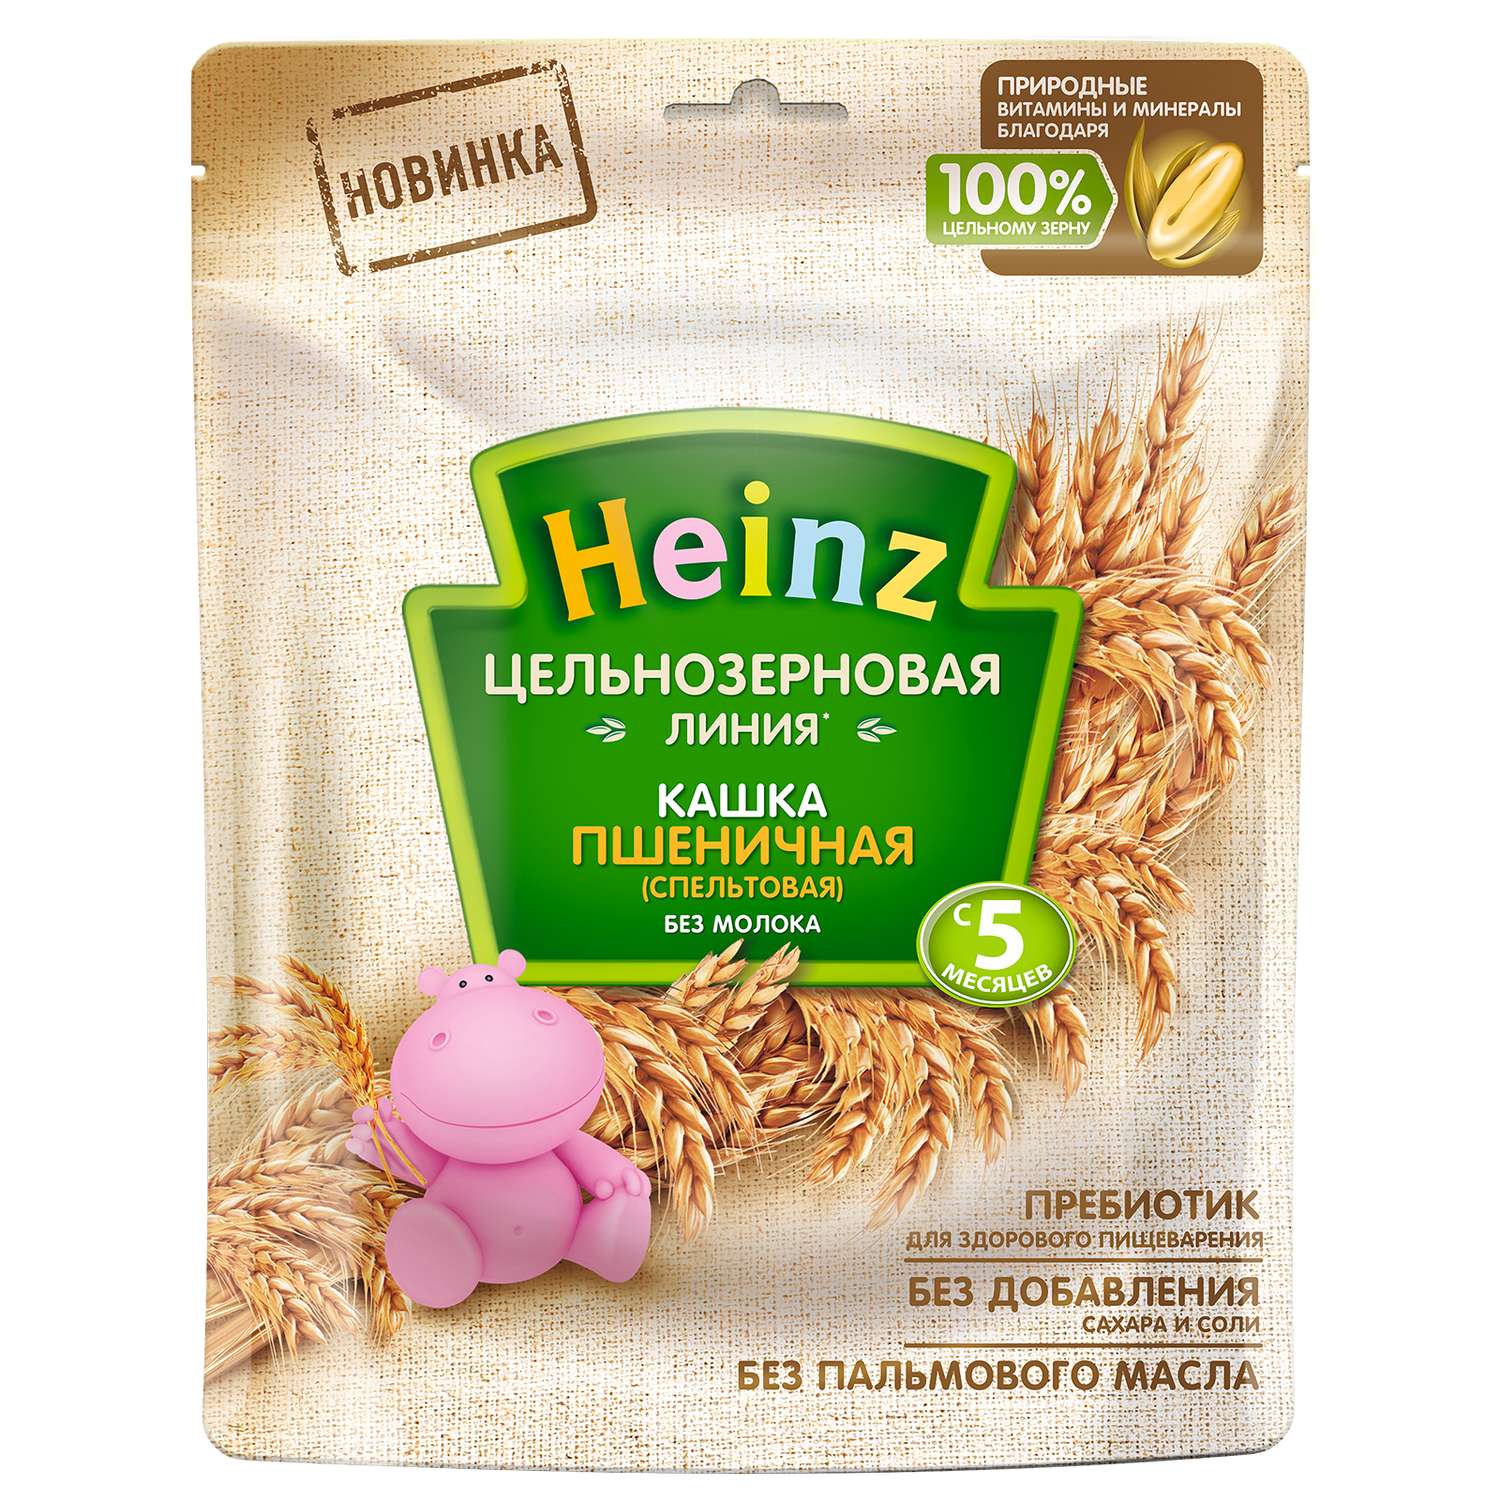 Каша Heinz цельнозерновая пшеничная 180г с 5 месяцев - фото 7